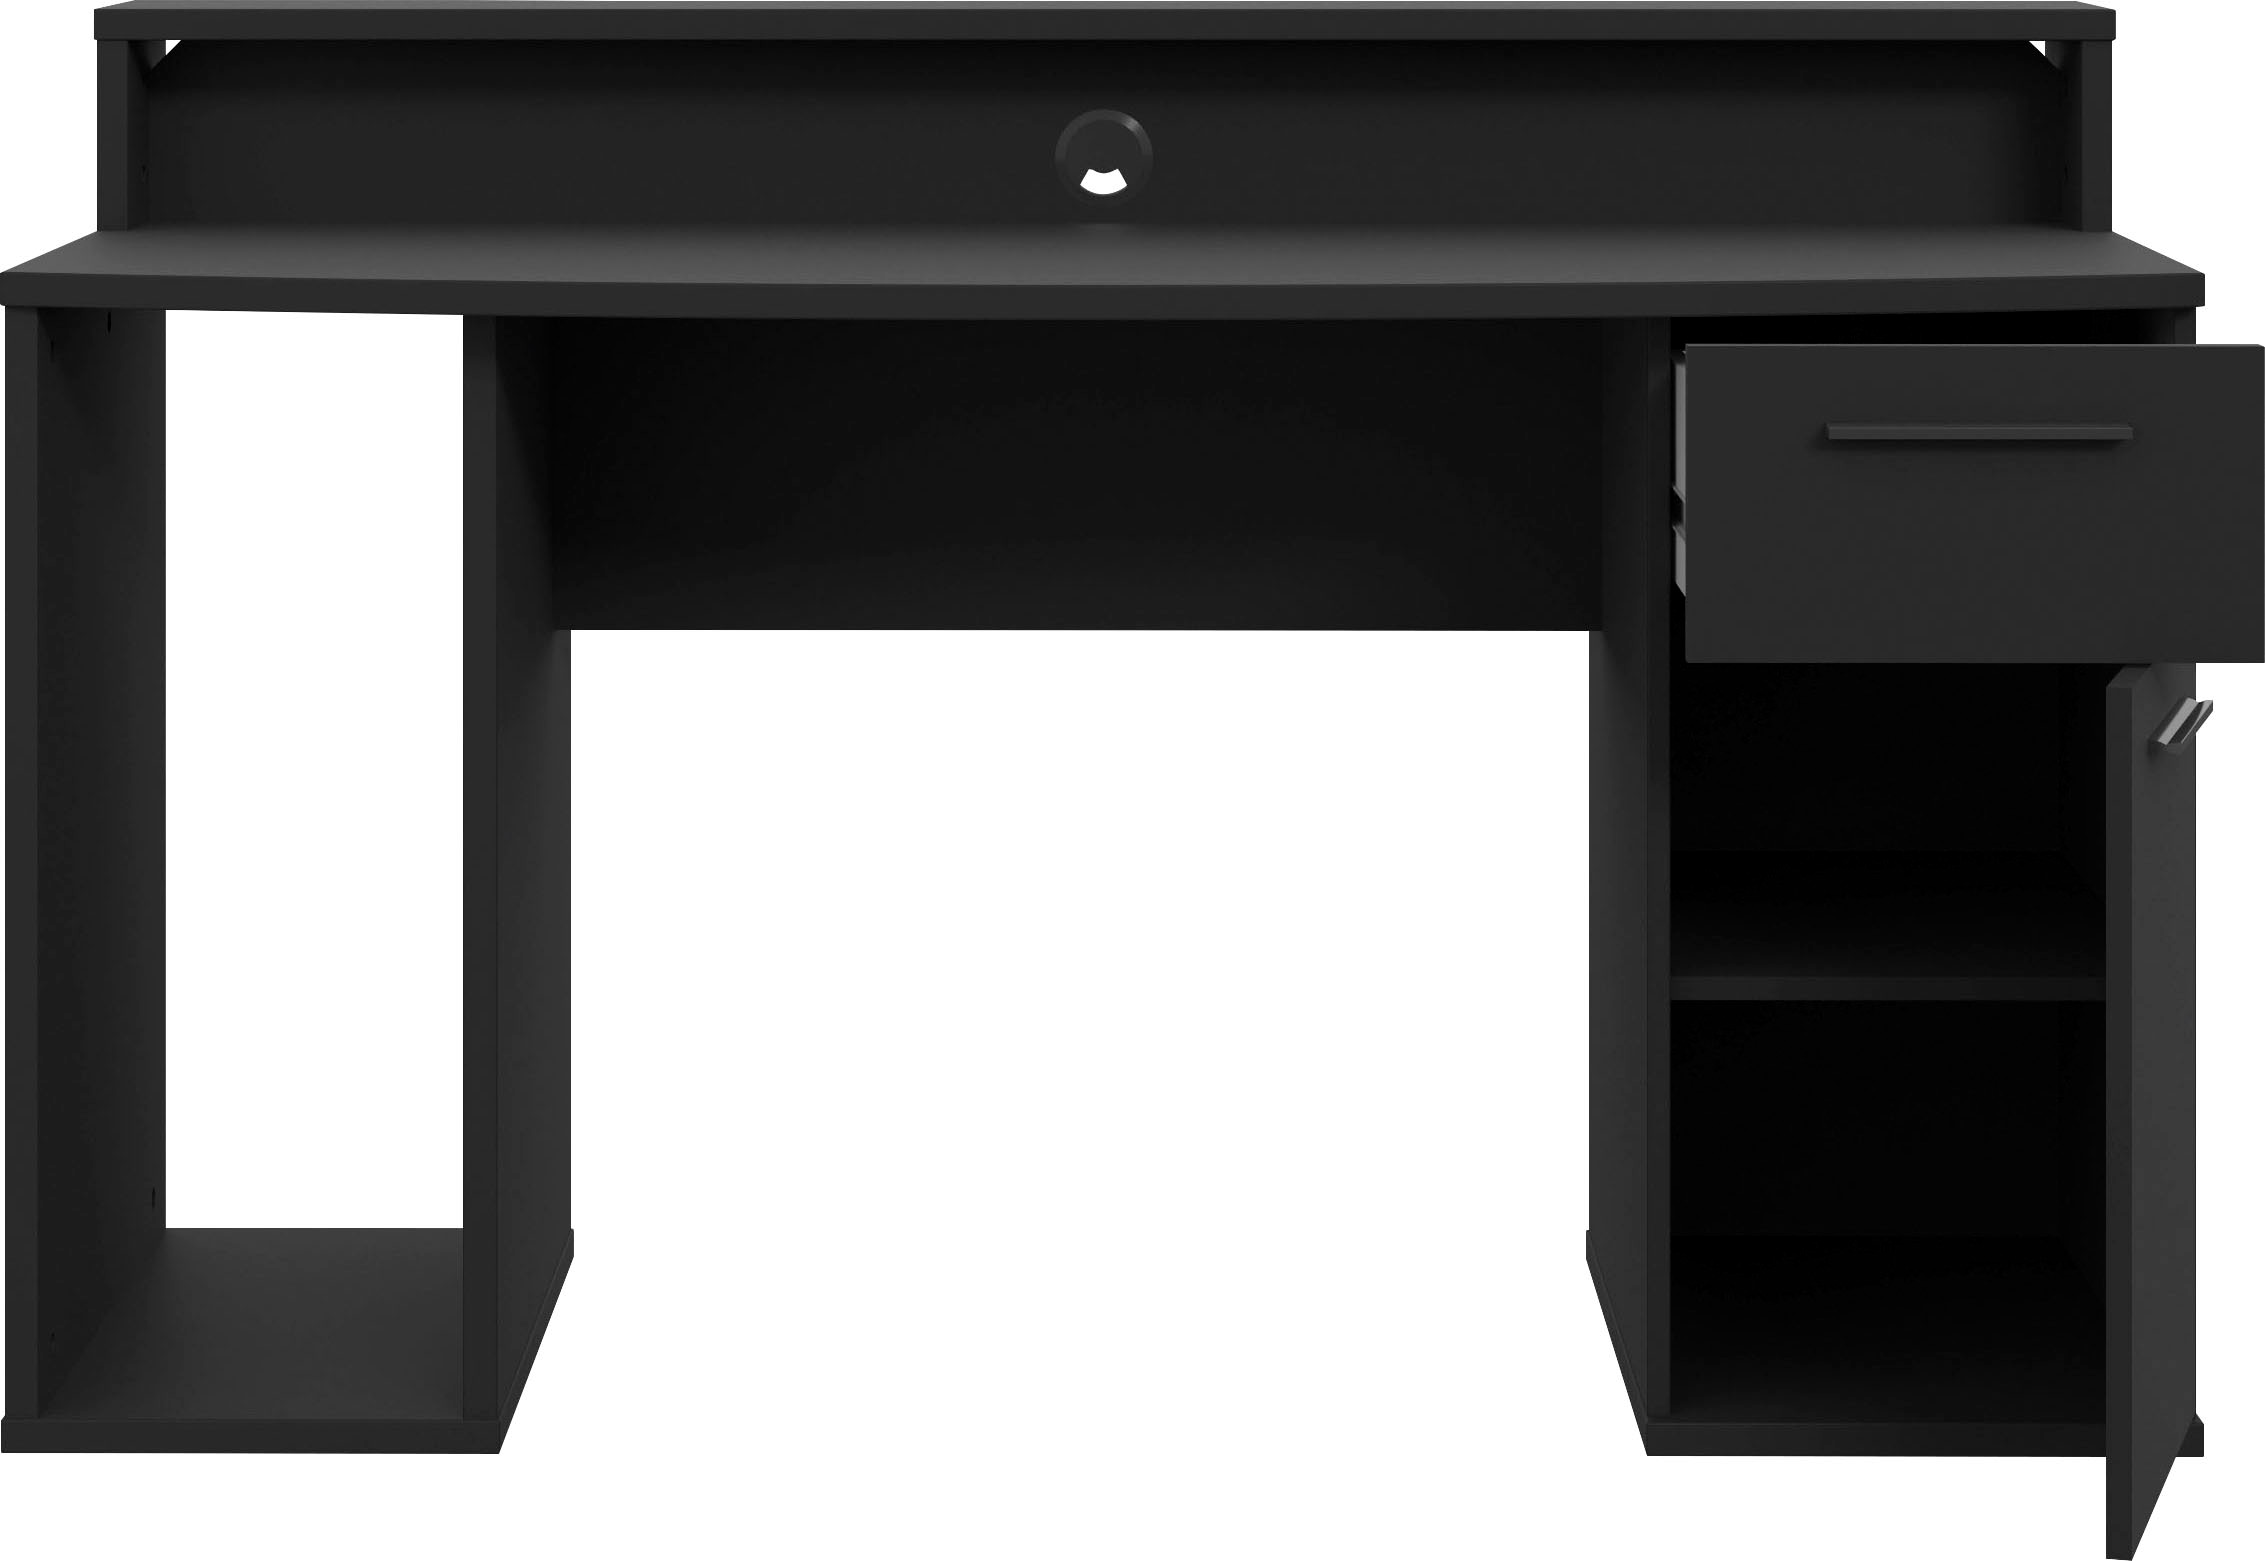 FORTE Gamingtisch »Ayo«, mit LED-RGB Beleuchtung, moderner Schreibtisch, Breite 140 cm